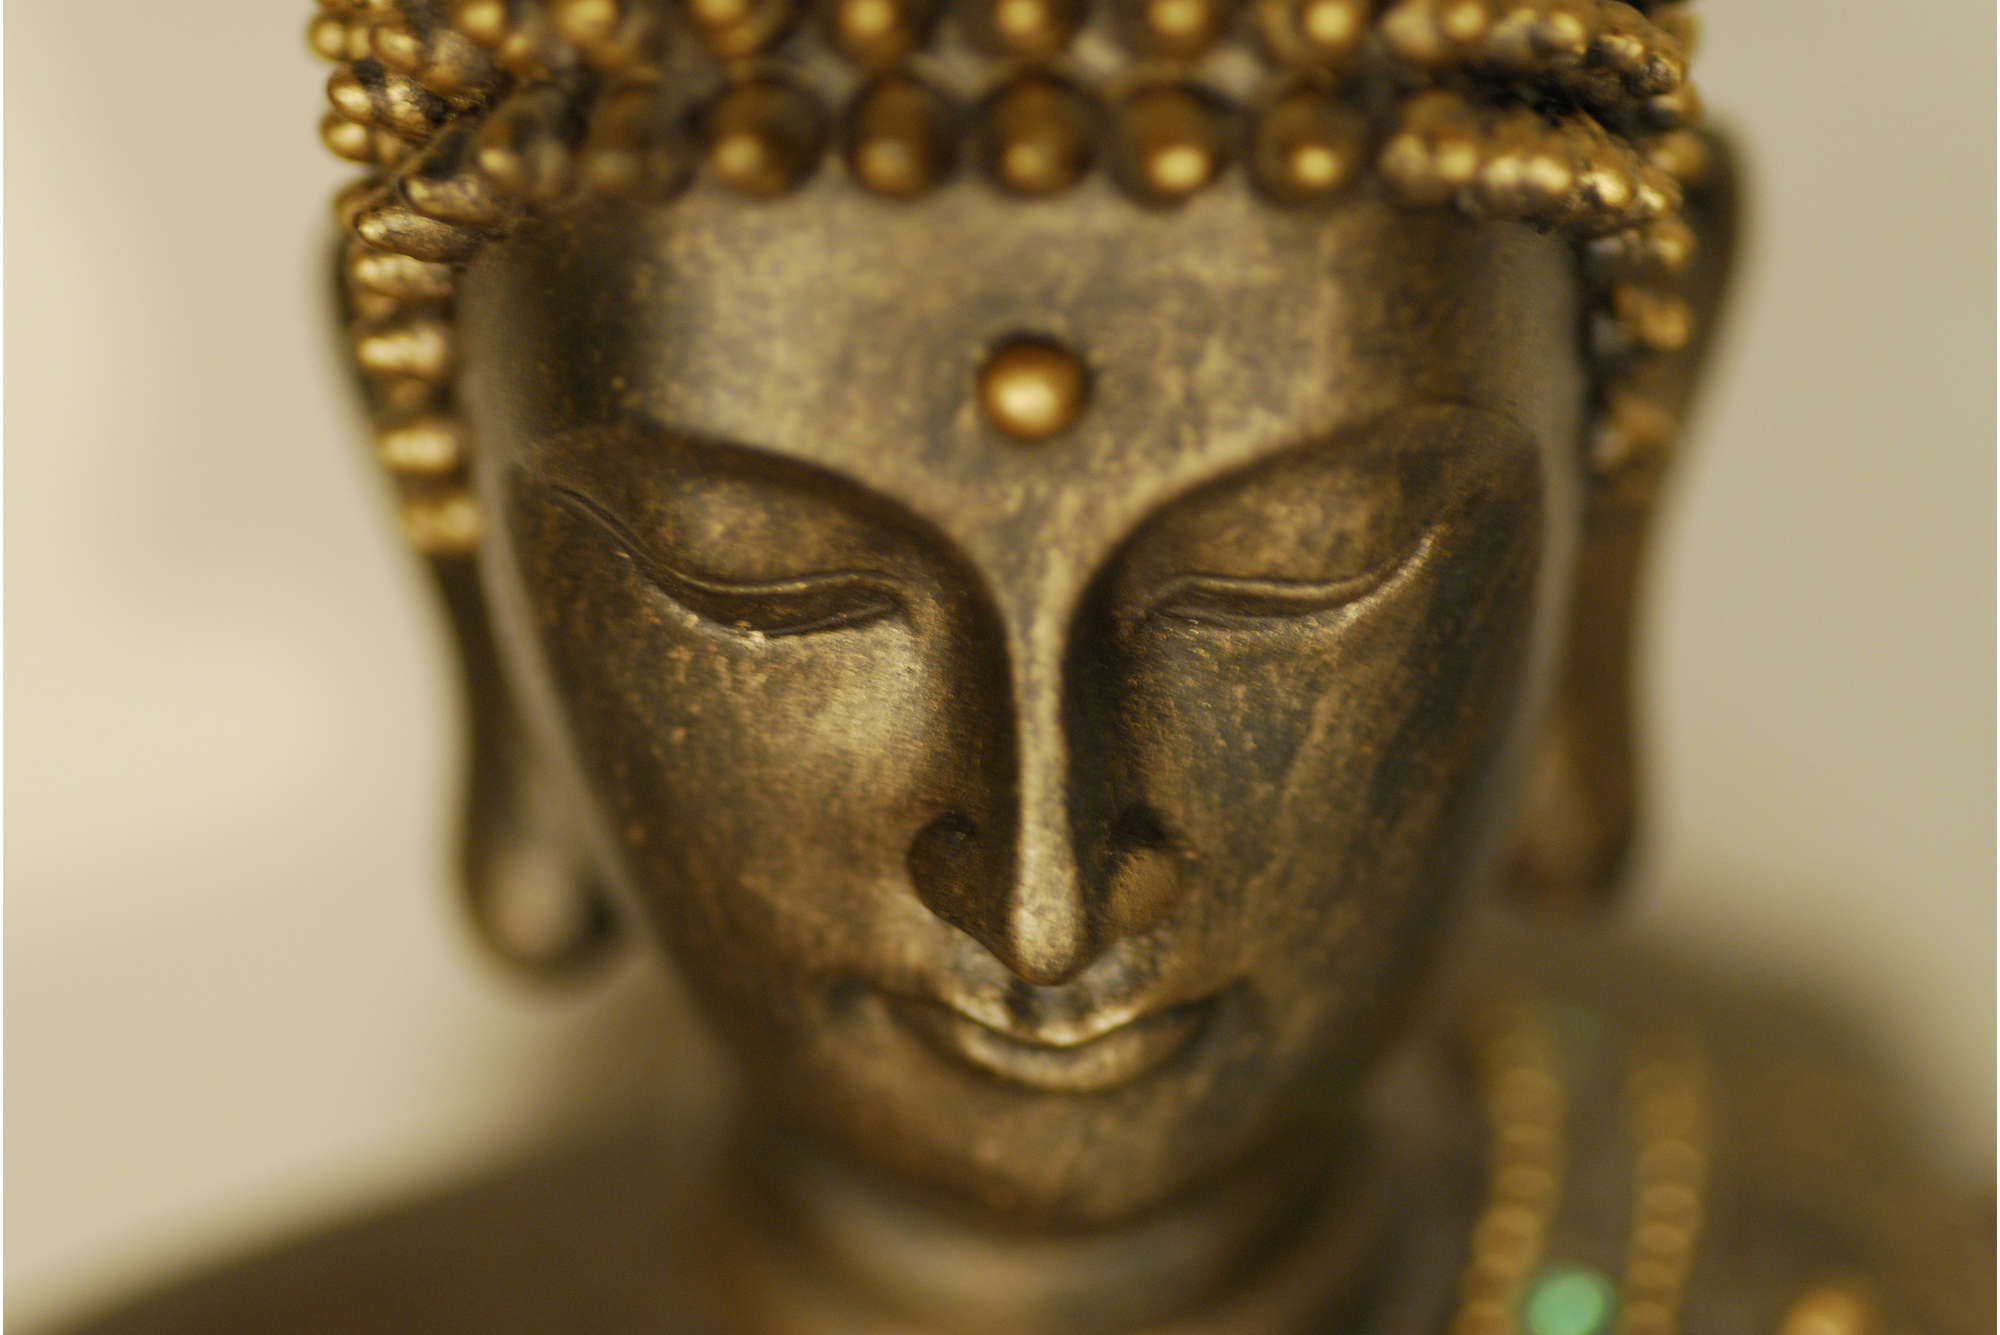             papiers peints à impression numérique gros plan de la figure de Bouddha - intissé lisse mat
        